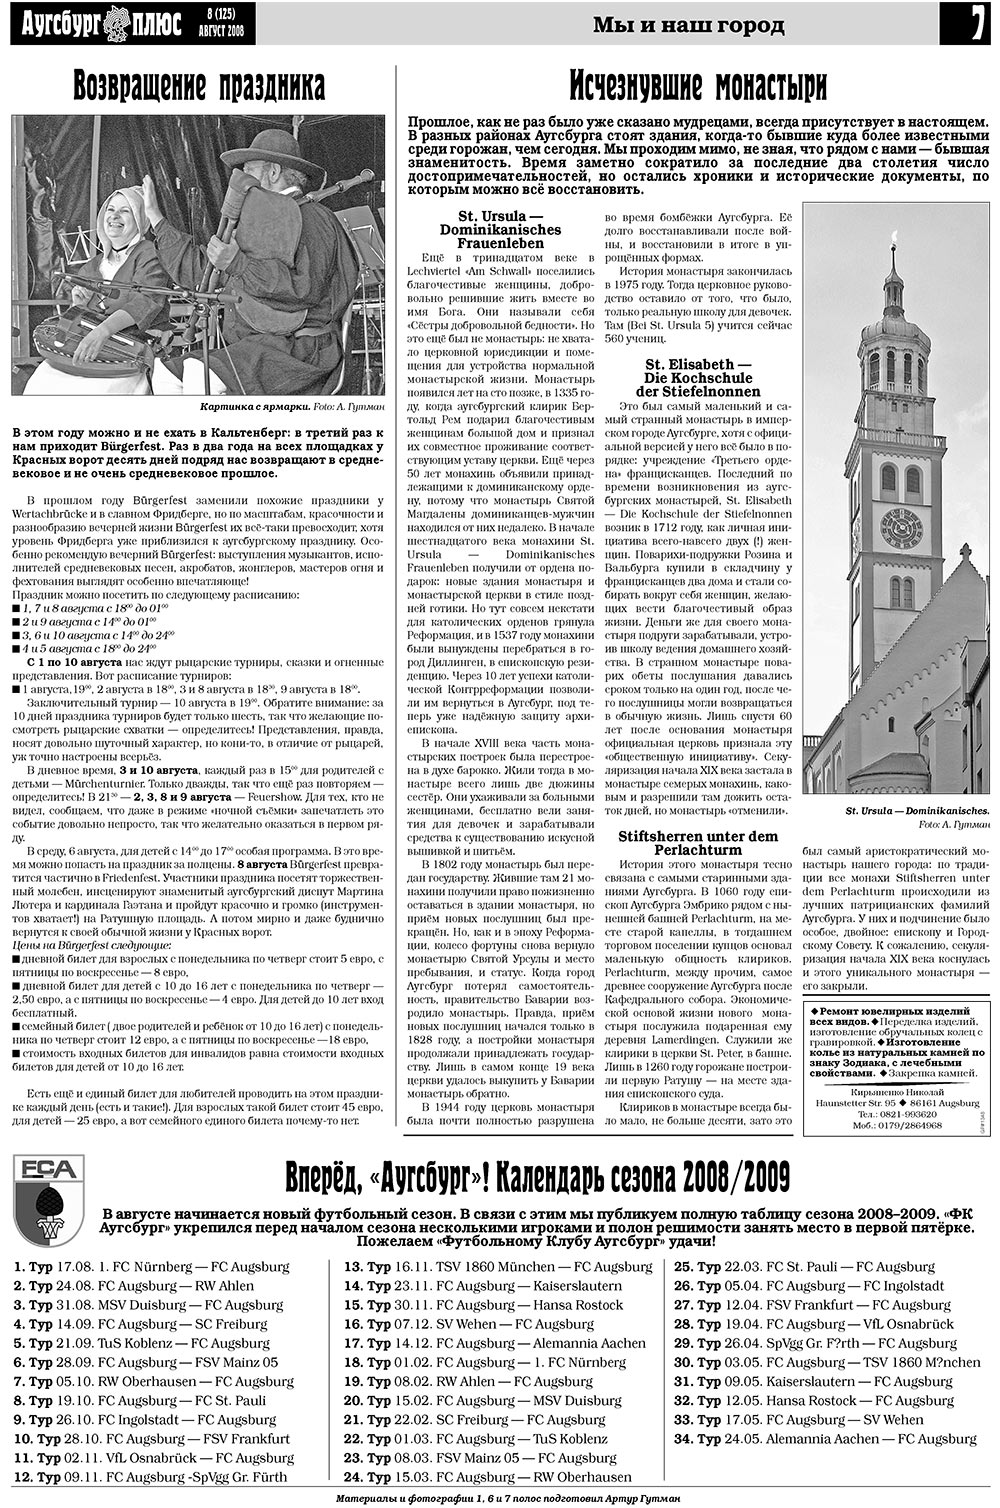 Германия плюс, газета. 2008 №8 стр.9